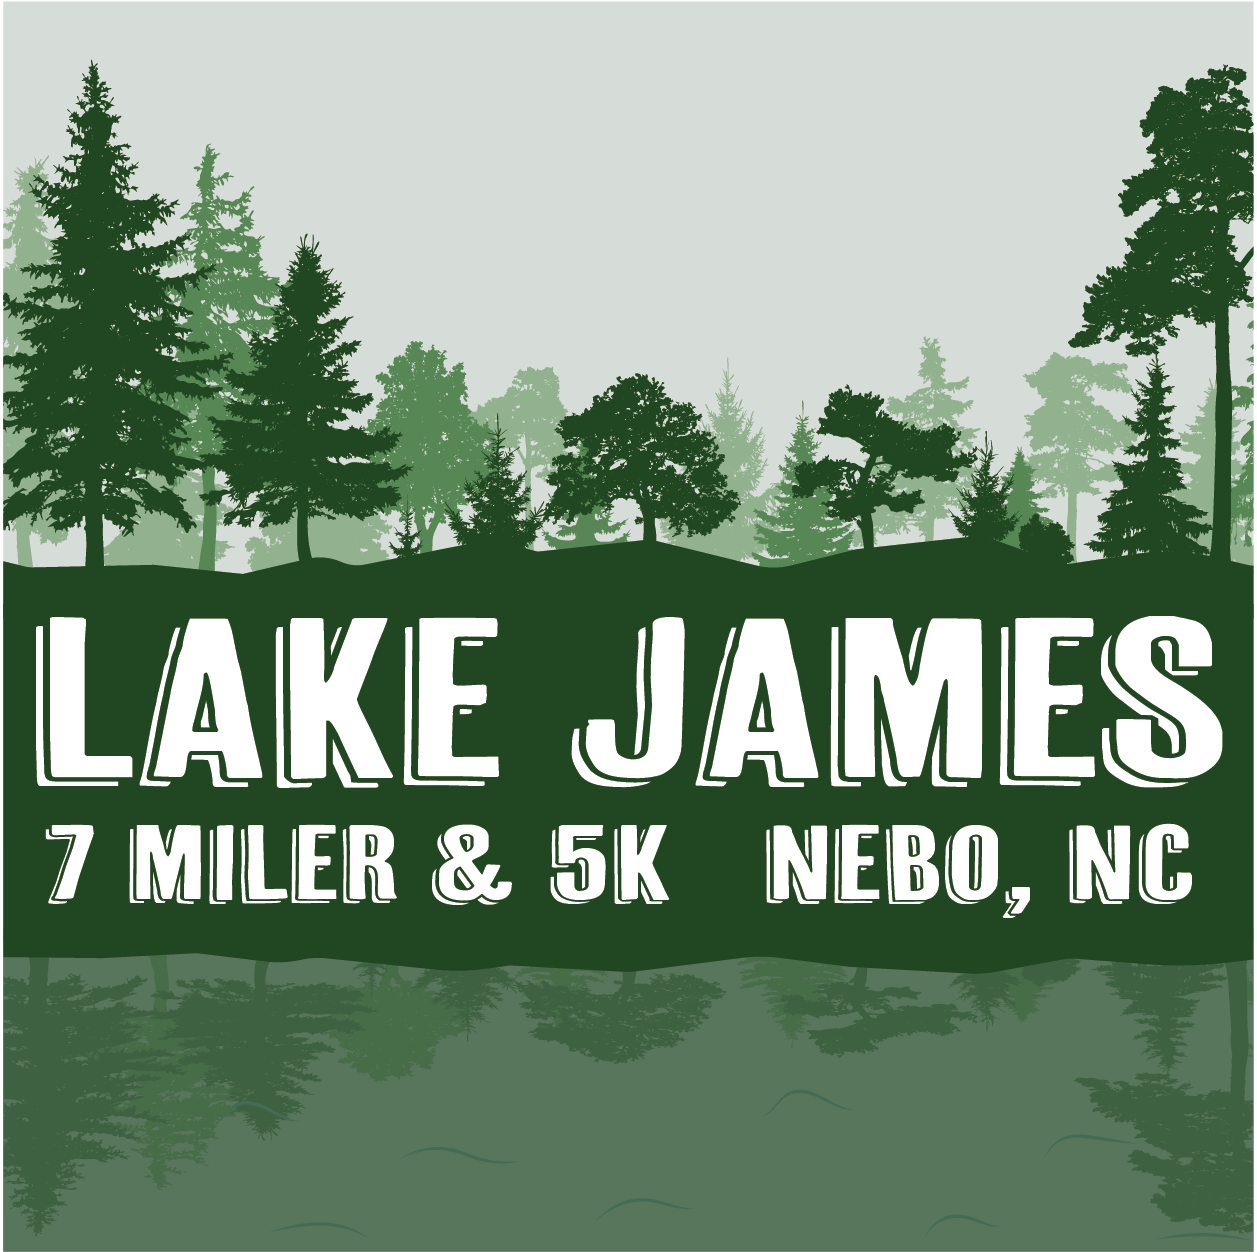 Lake James 7 Miler & 5K logo on RaceRaves